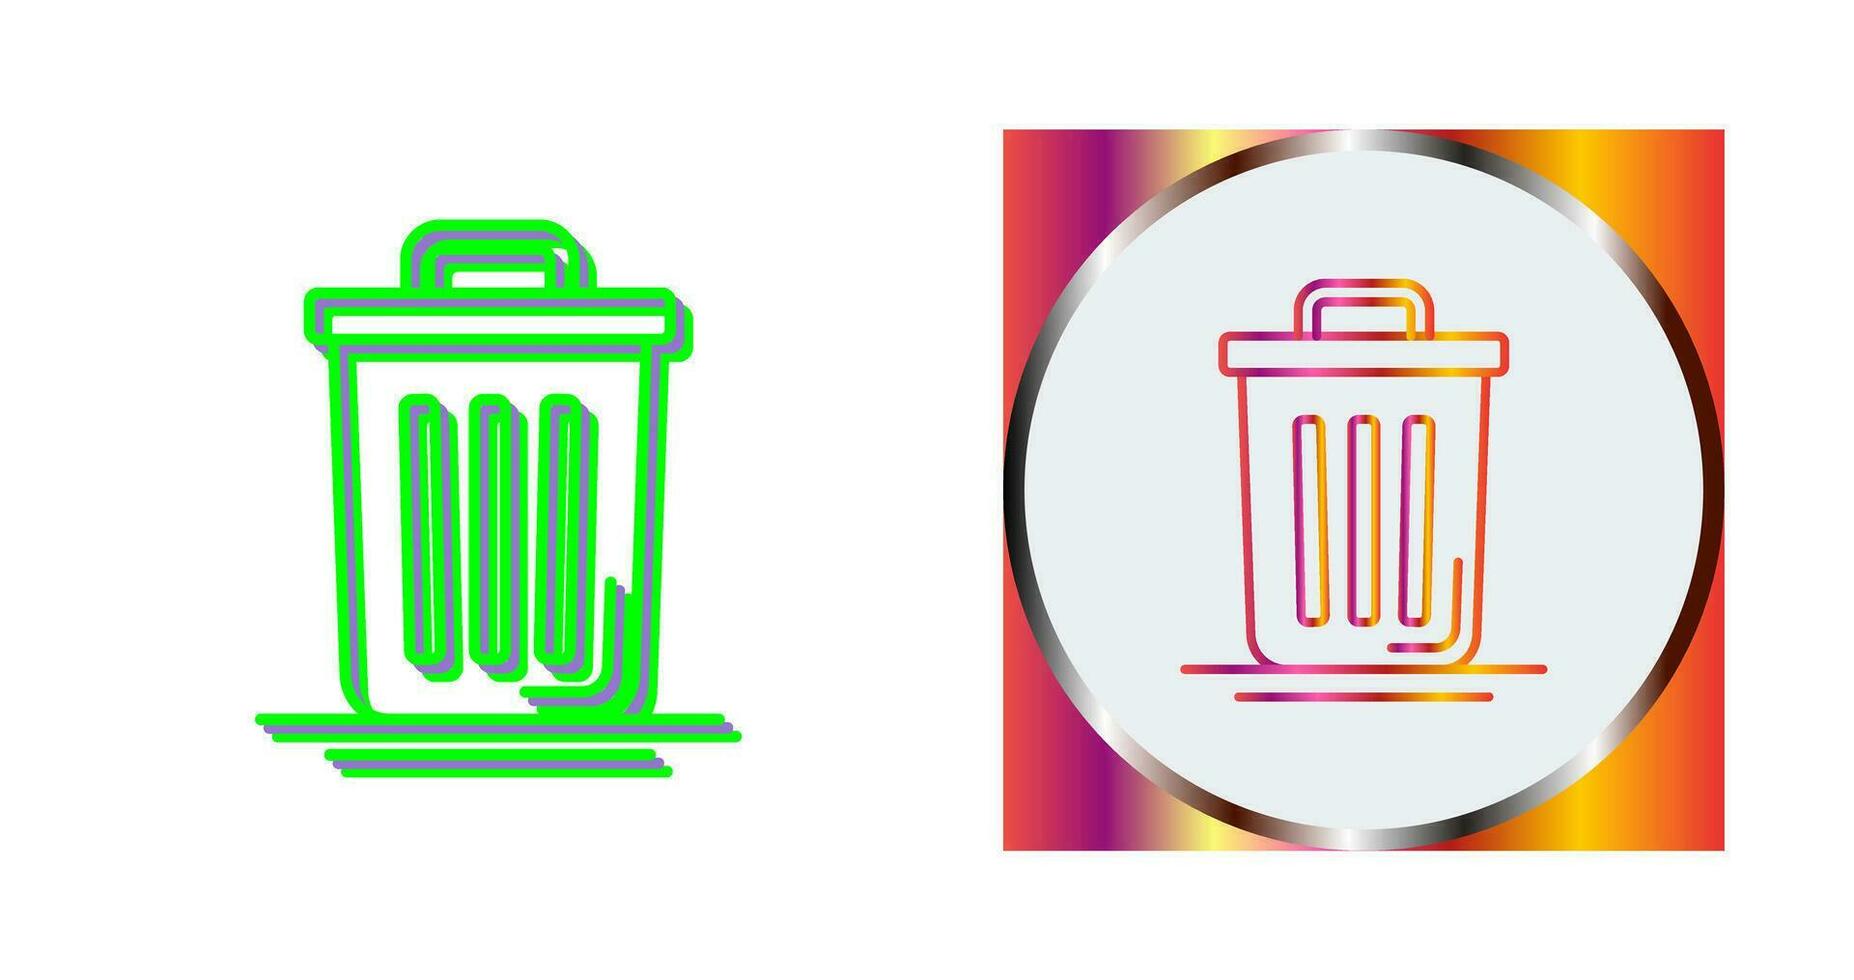 Trash Can Vector Icon